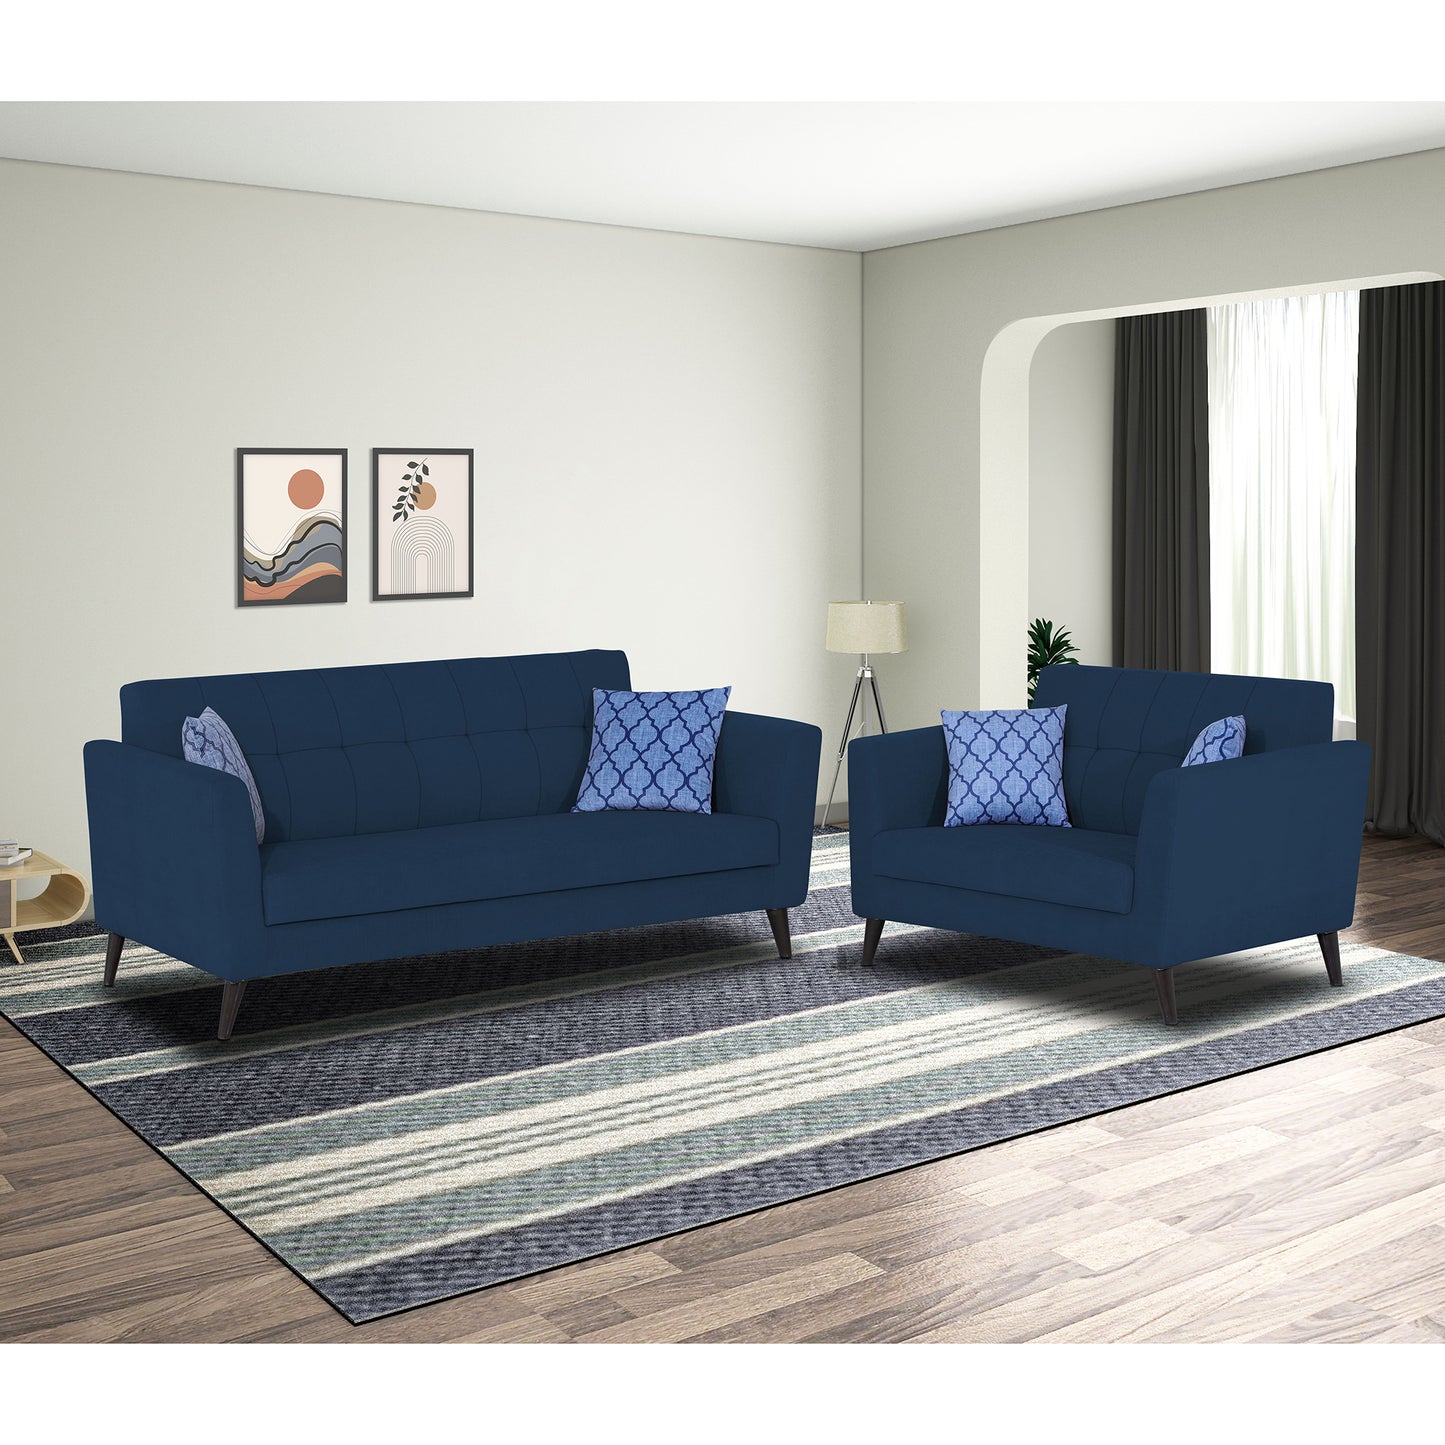 Adorn India Dannis 3+2 5 Seater Sofa Set